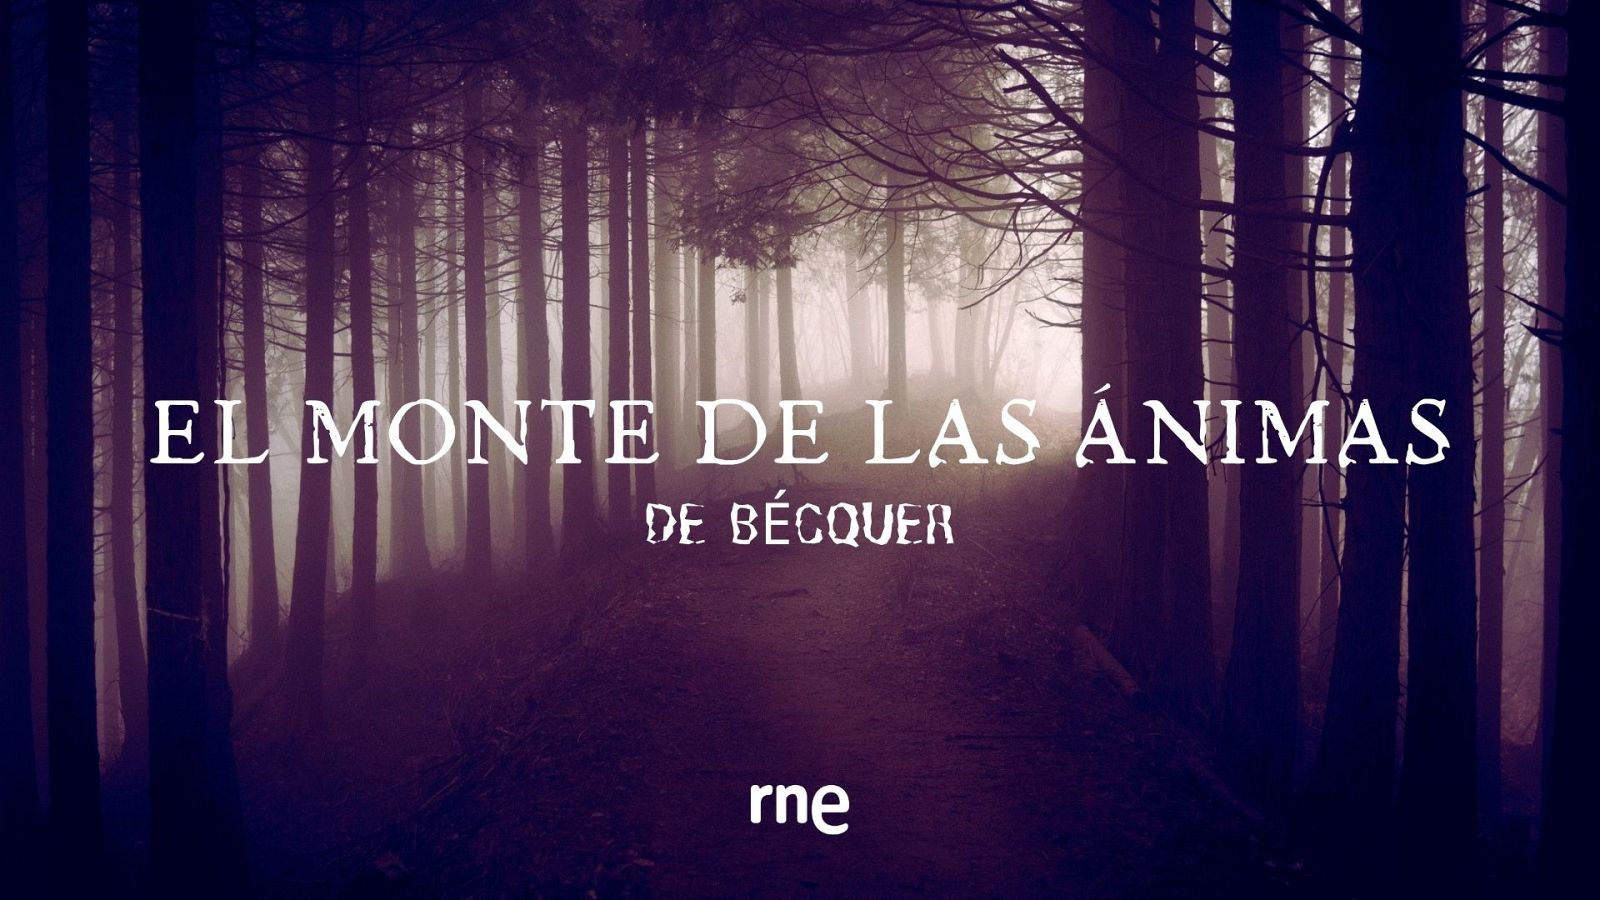 Ficcin sonora de 'El Monte de las nimas' de Bcquer en Soria